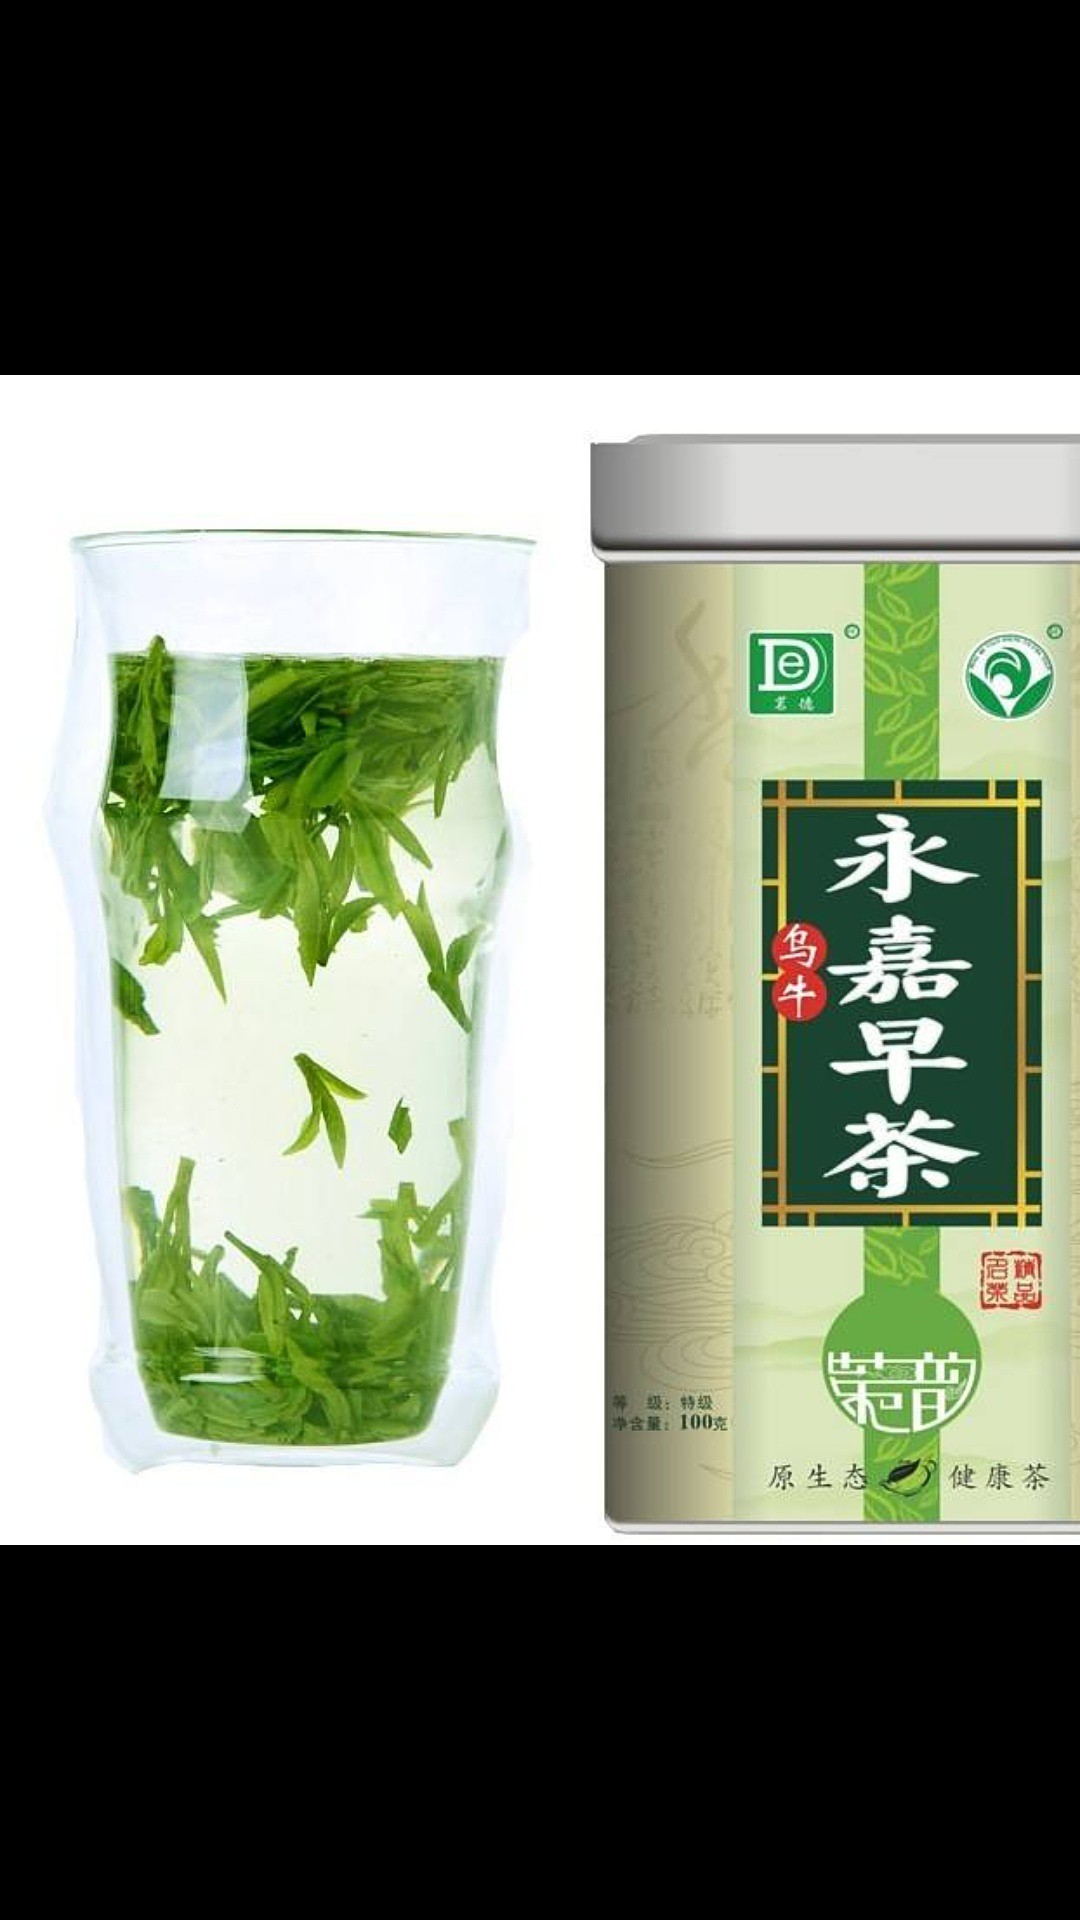 永嘉乌牛早茶系列产品- 瓯农惠